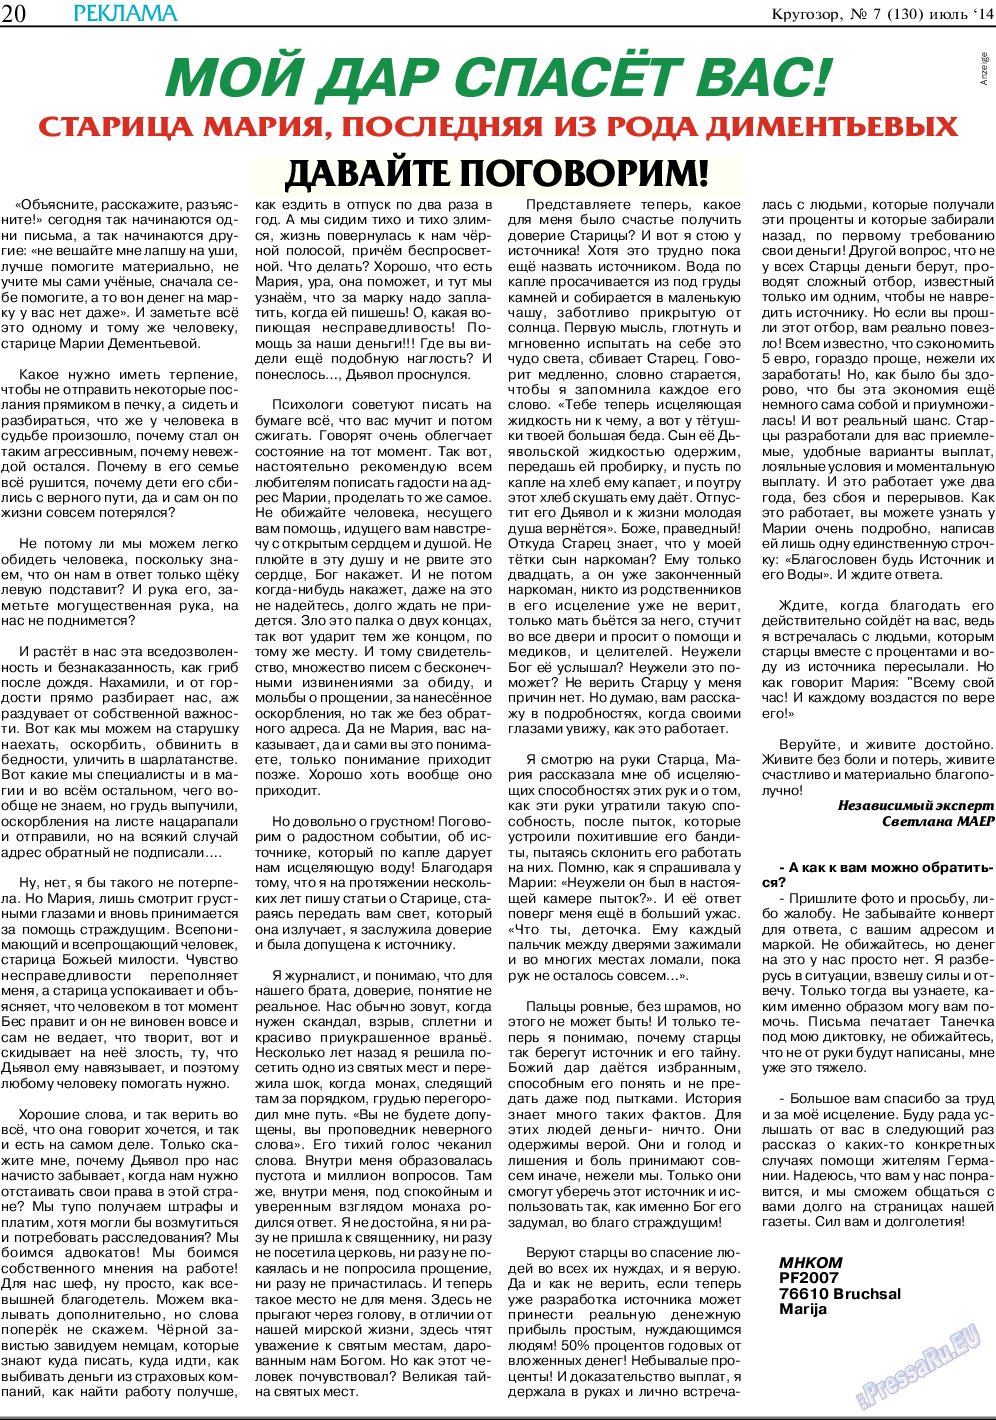 Кругозор, газета. 2014 №7 стр.20